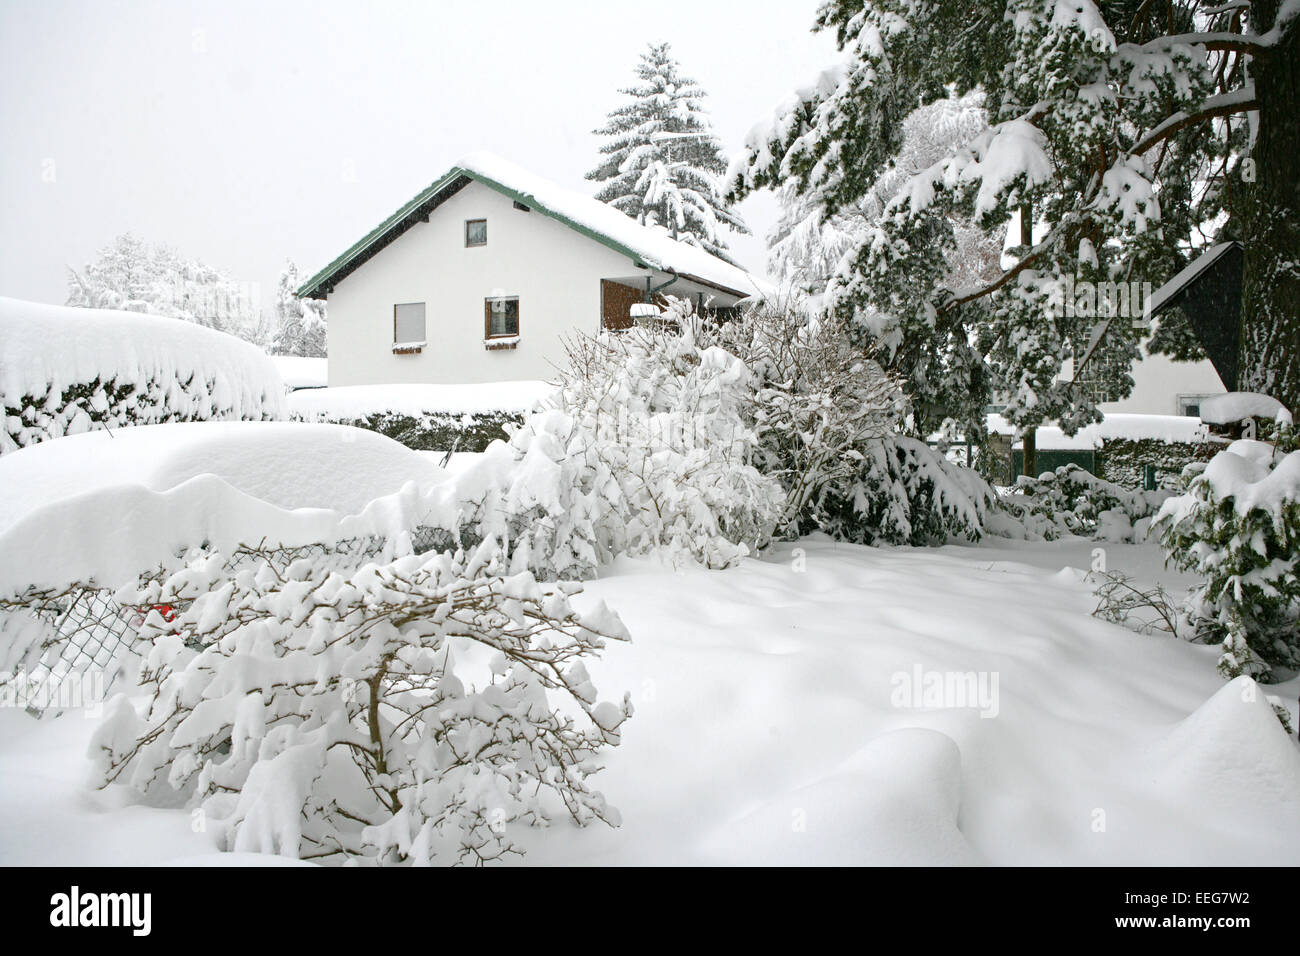 Straeucher Garten Wohngebiet Neuschnee Winter, Vegetation Baum verschneit eingeschneit Schnee Kaelte Wintereinbruch Schneechaos Stock Photo